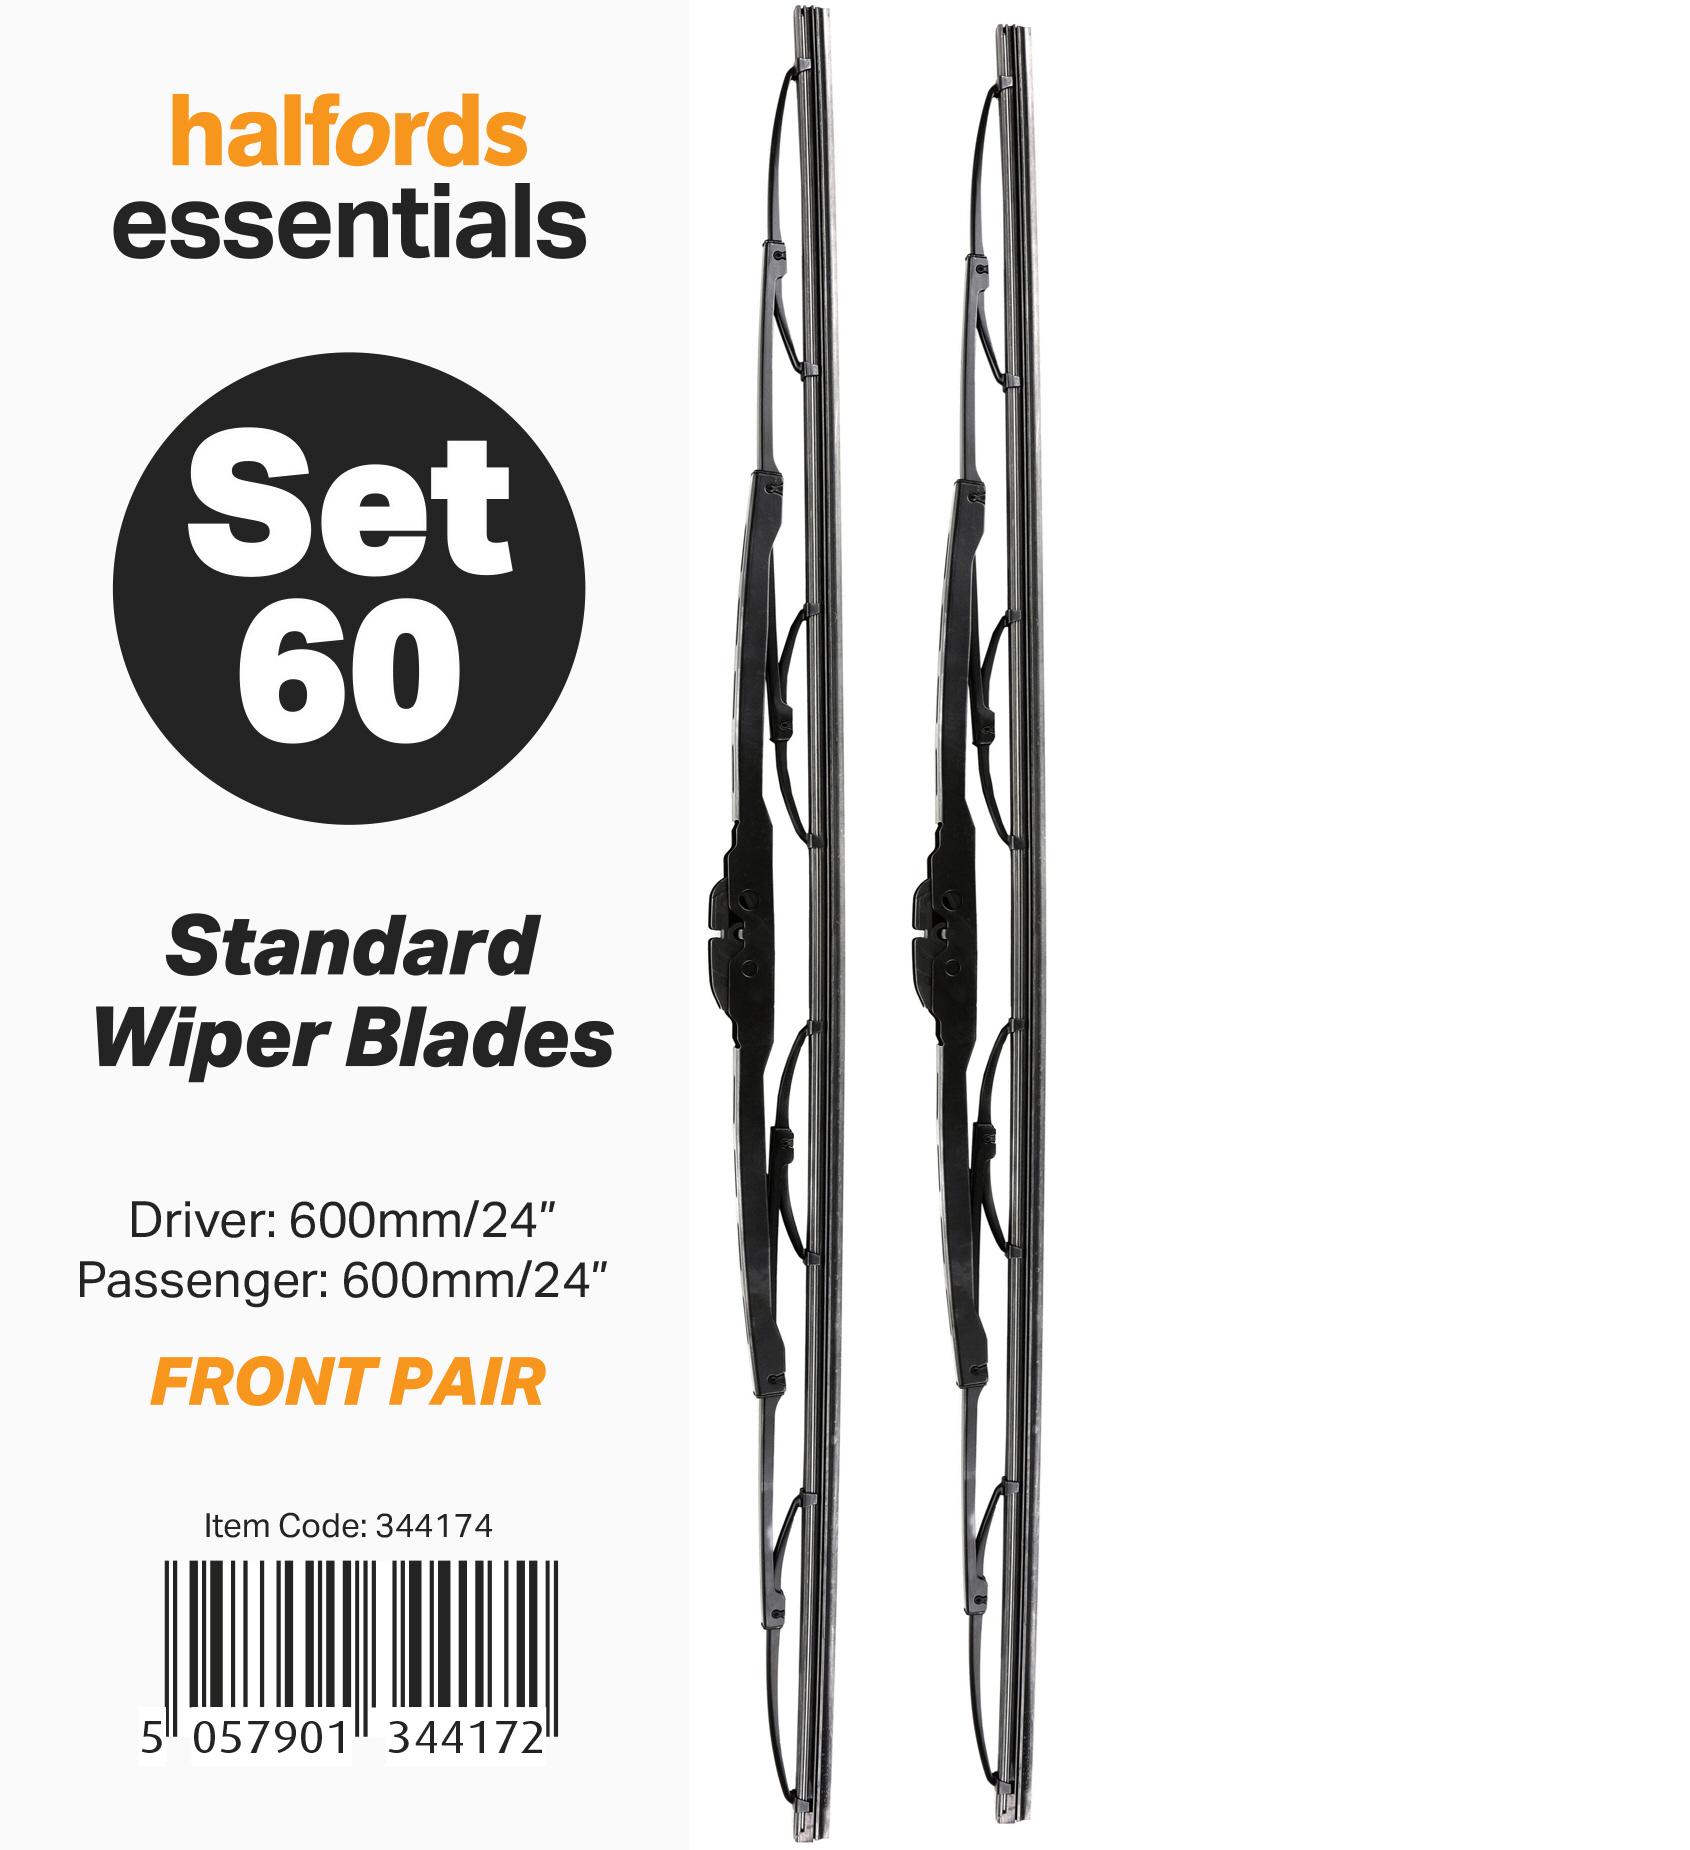 Halfords Essentials Wiper Blade Set 60